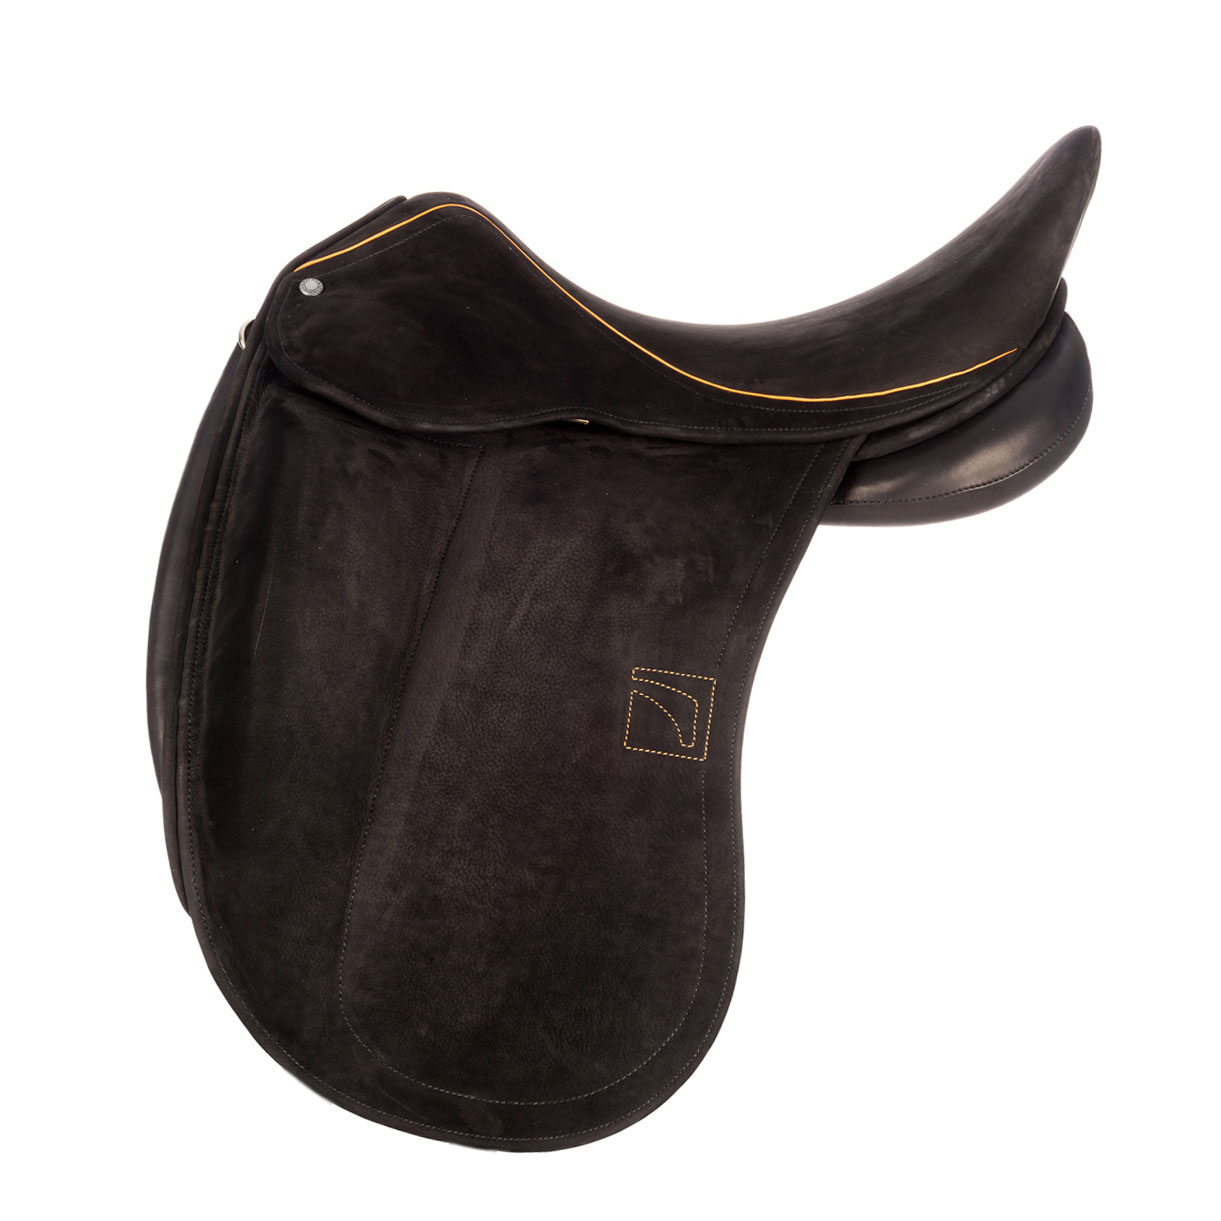 Modèle DGP dressage selle sur-mesure Childéric cuir bespoke saddle fait en France made in France fait main